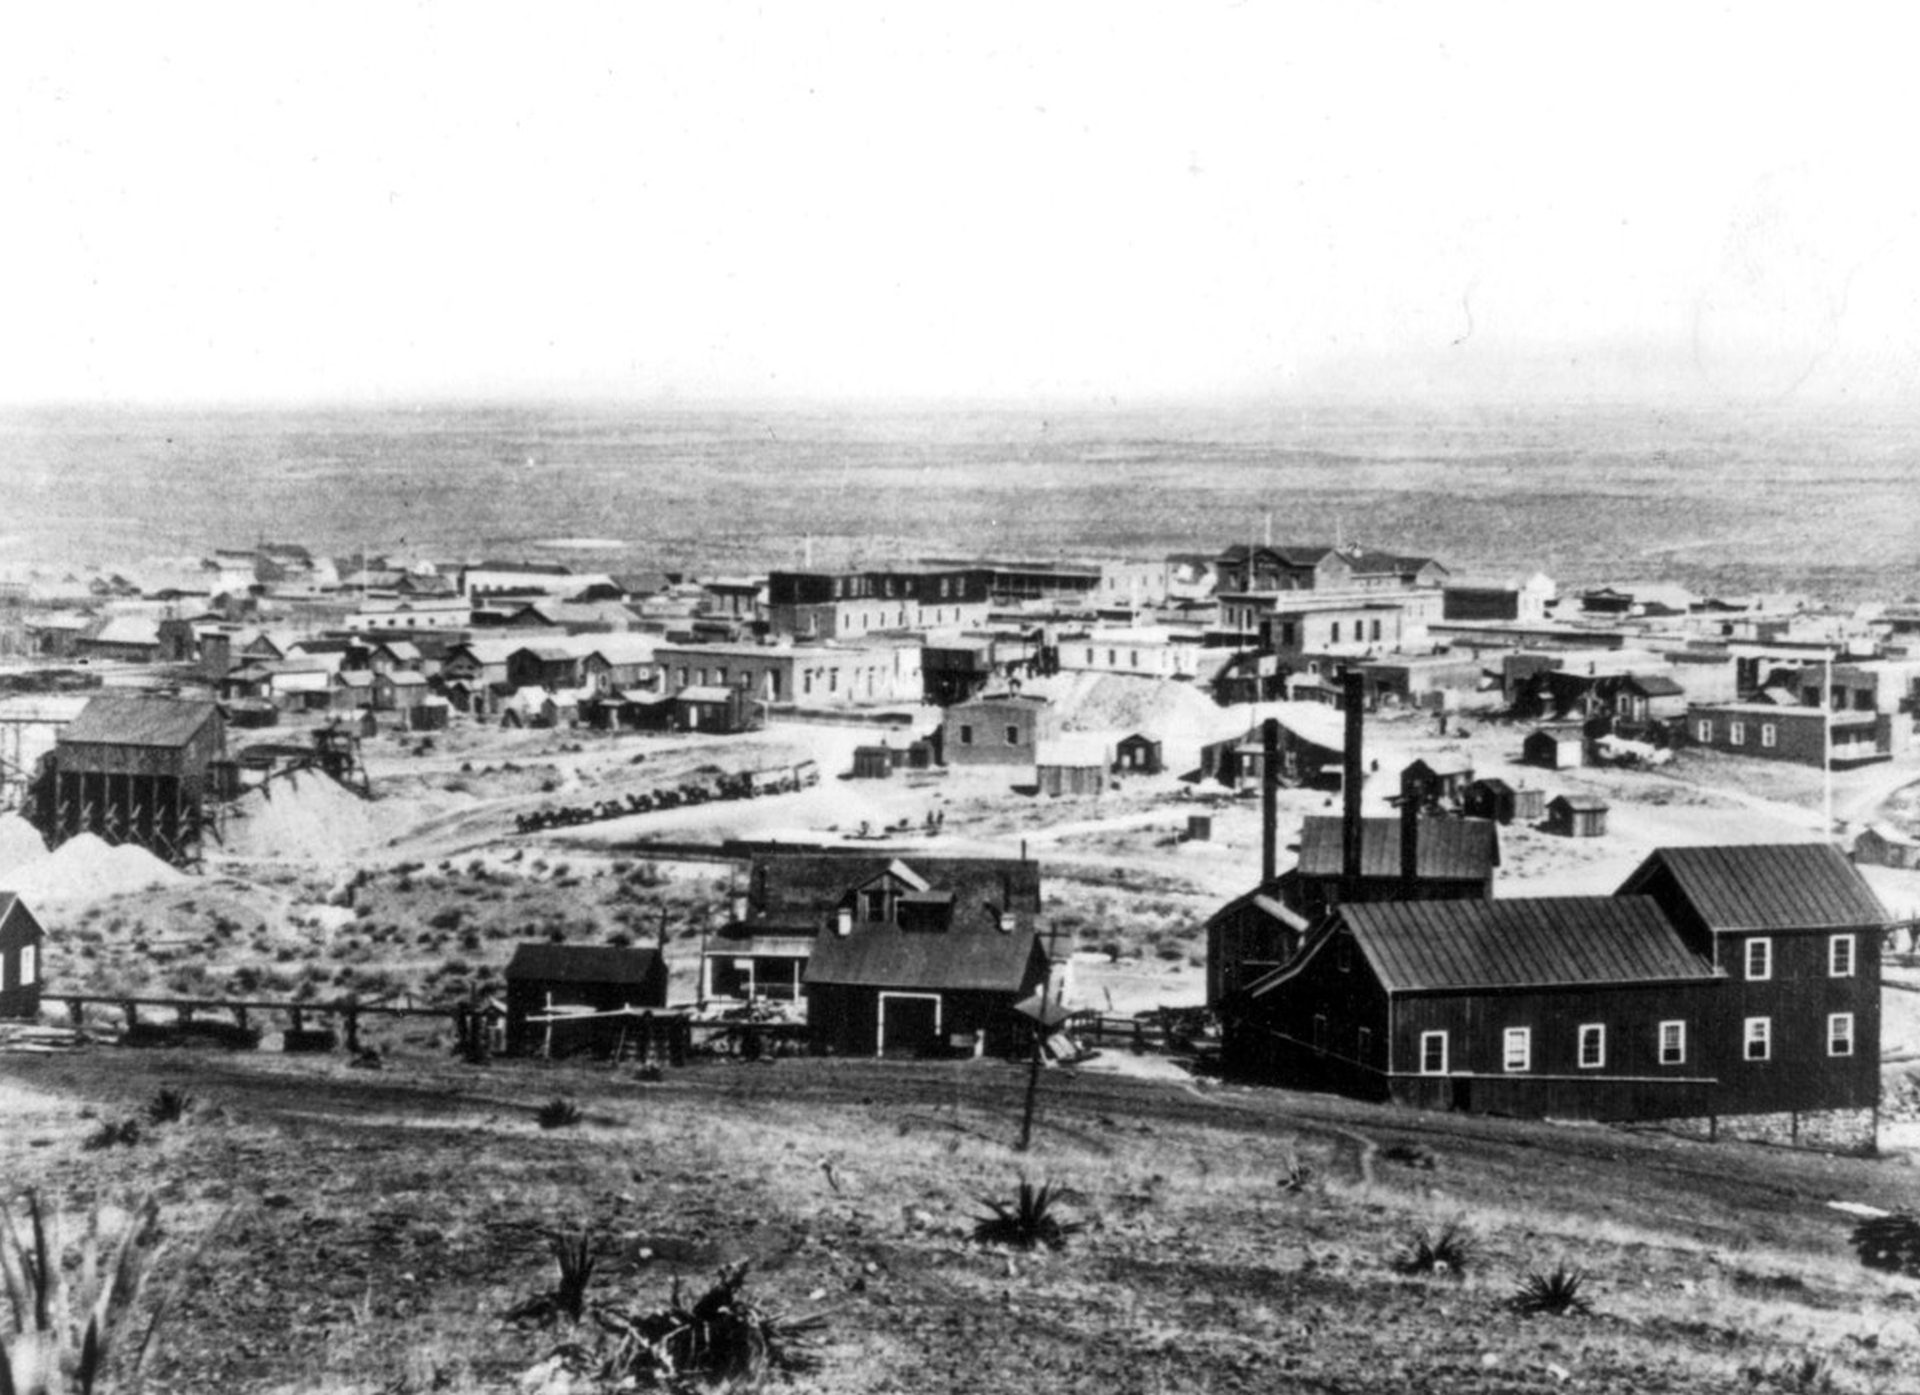 Schwarz-Weiß-Aufnahme mit Blick auf die vorwiegned aus einfachen Holzgebäuden bestehende Stadt von einer Anhöhe aus.